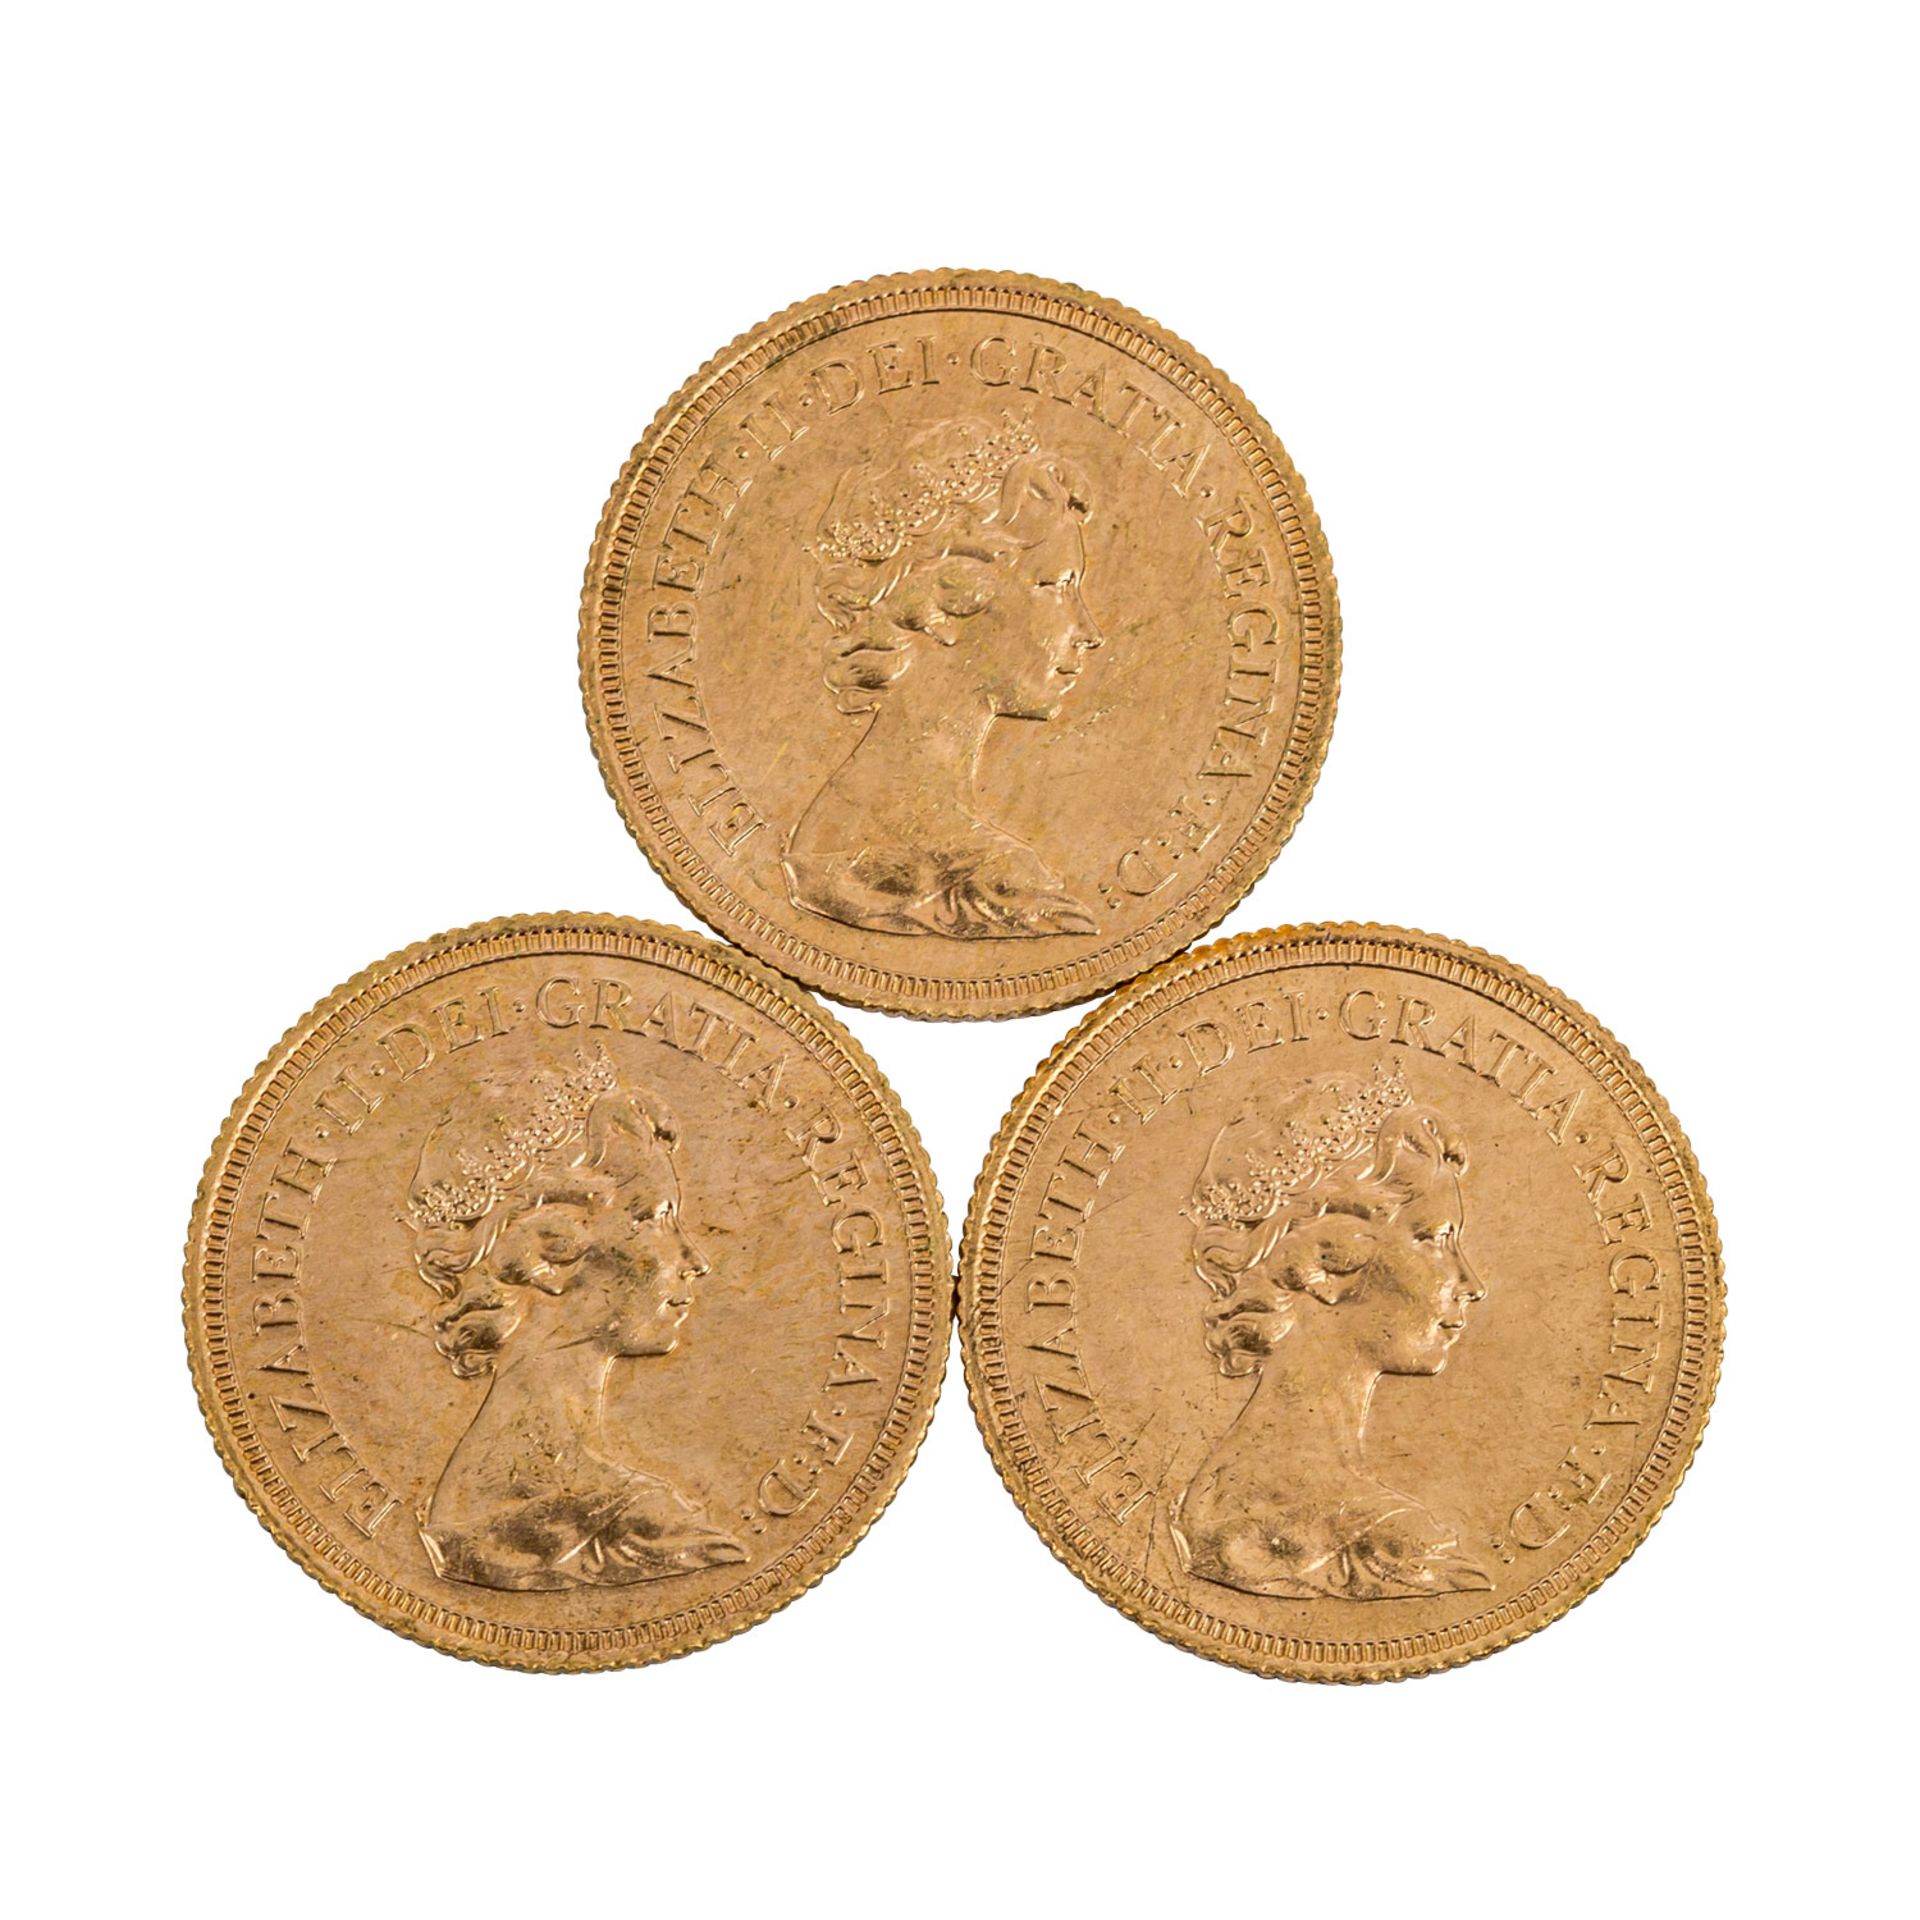 GB in GOLD -3 x GB - 1 Sovereign 1979, Elizabeth II. mit Diadem, Erhalt 1 x vz, 2 x ss-vz mit